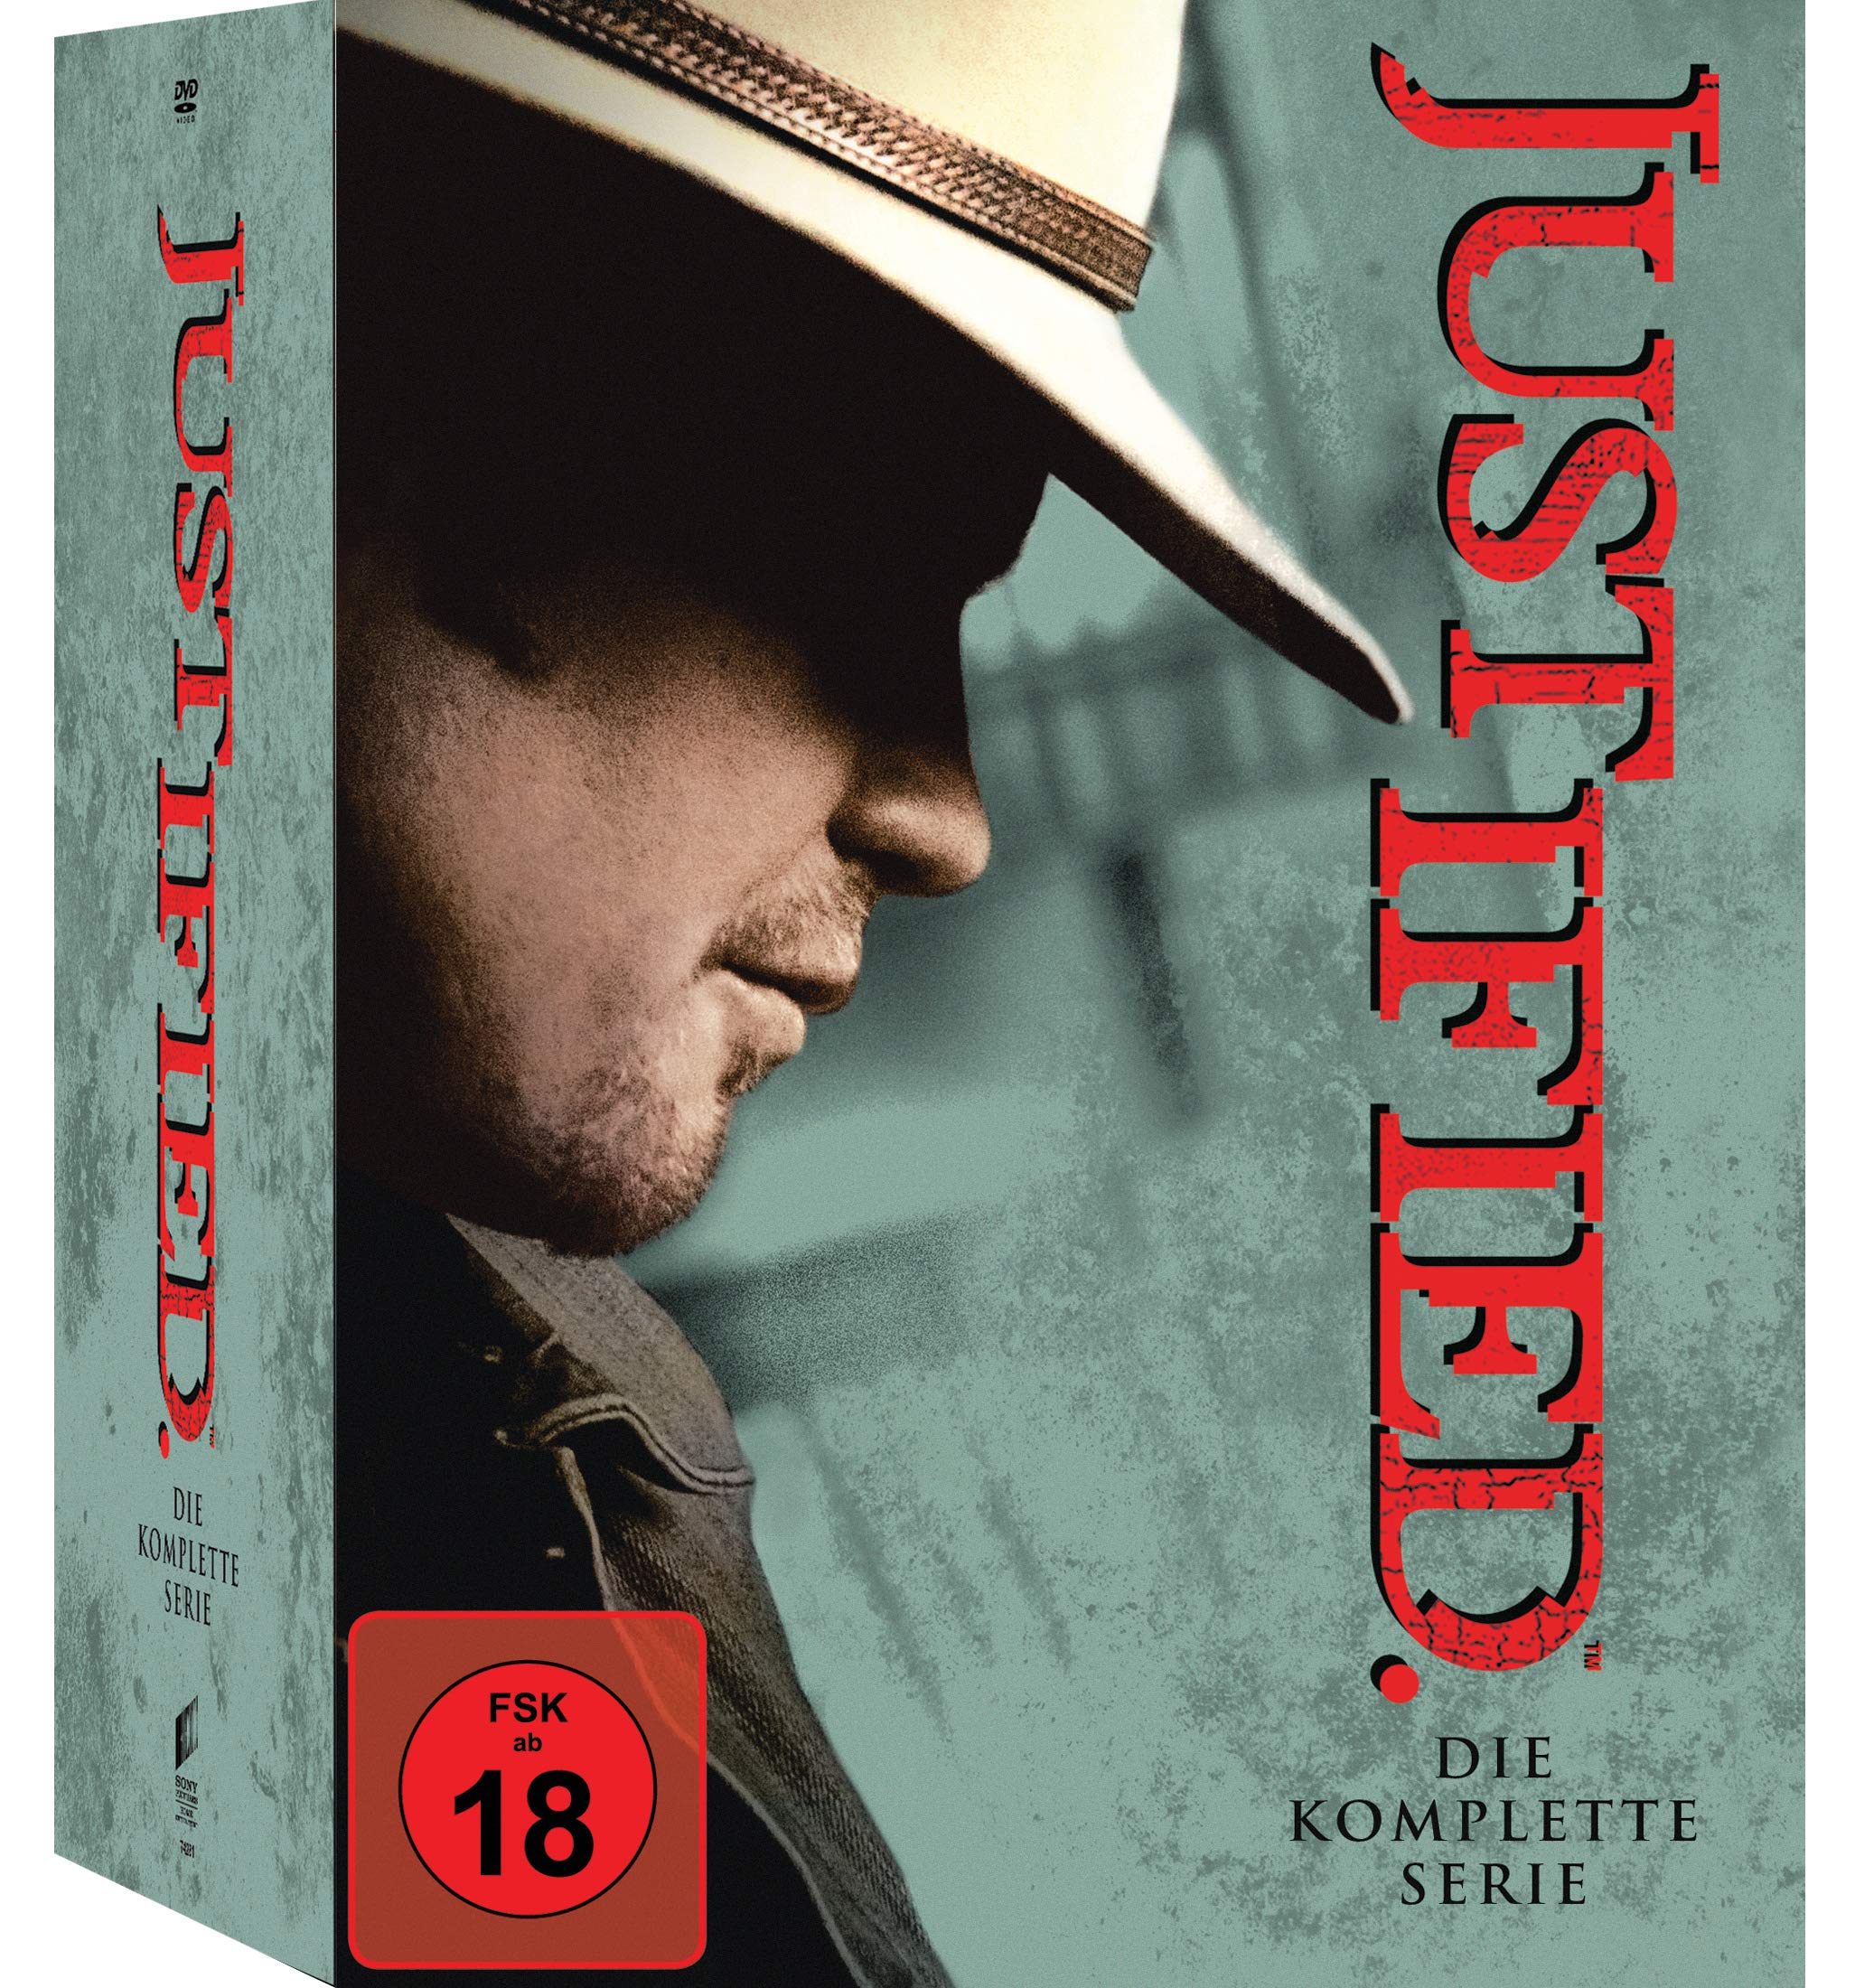 Justified - Die komplette Serie (18 DVDs)